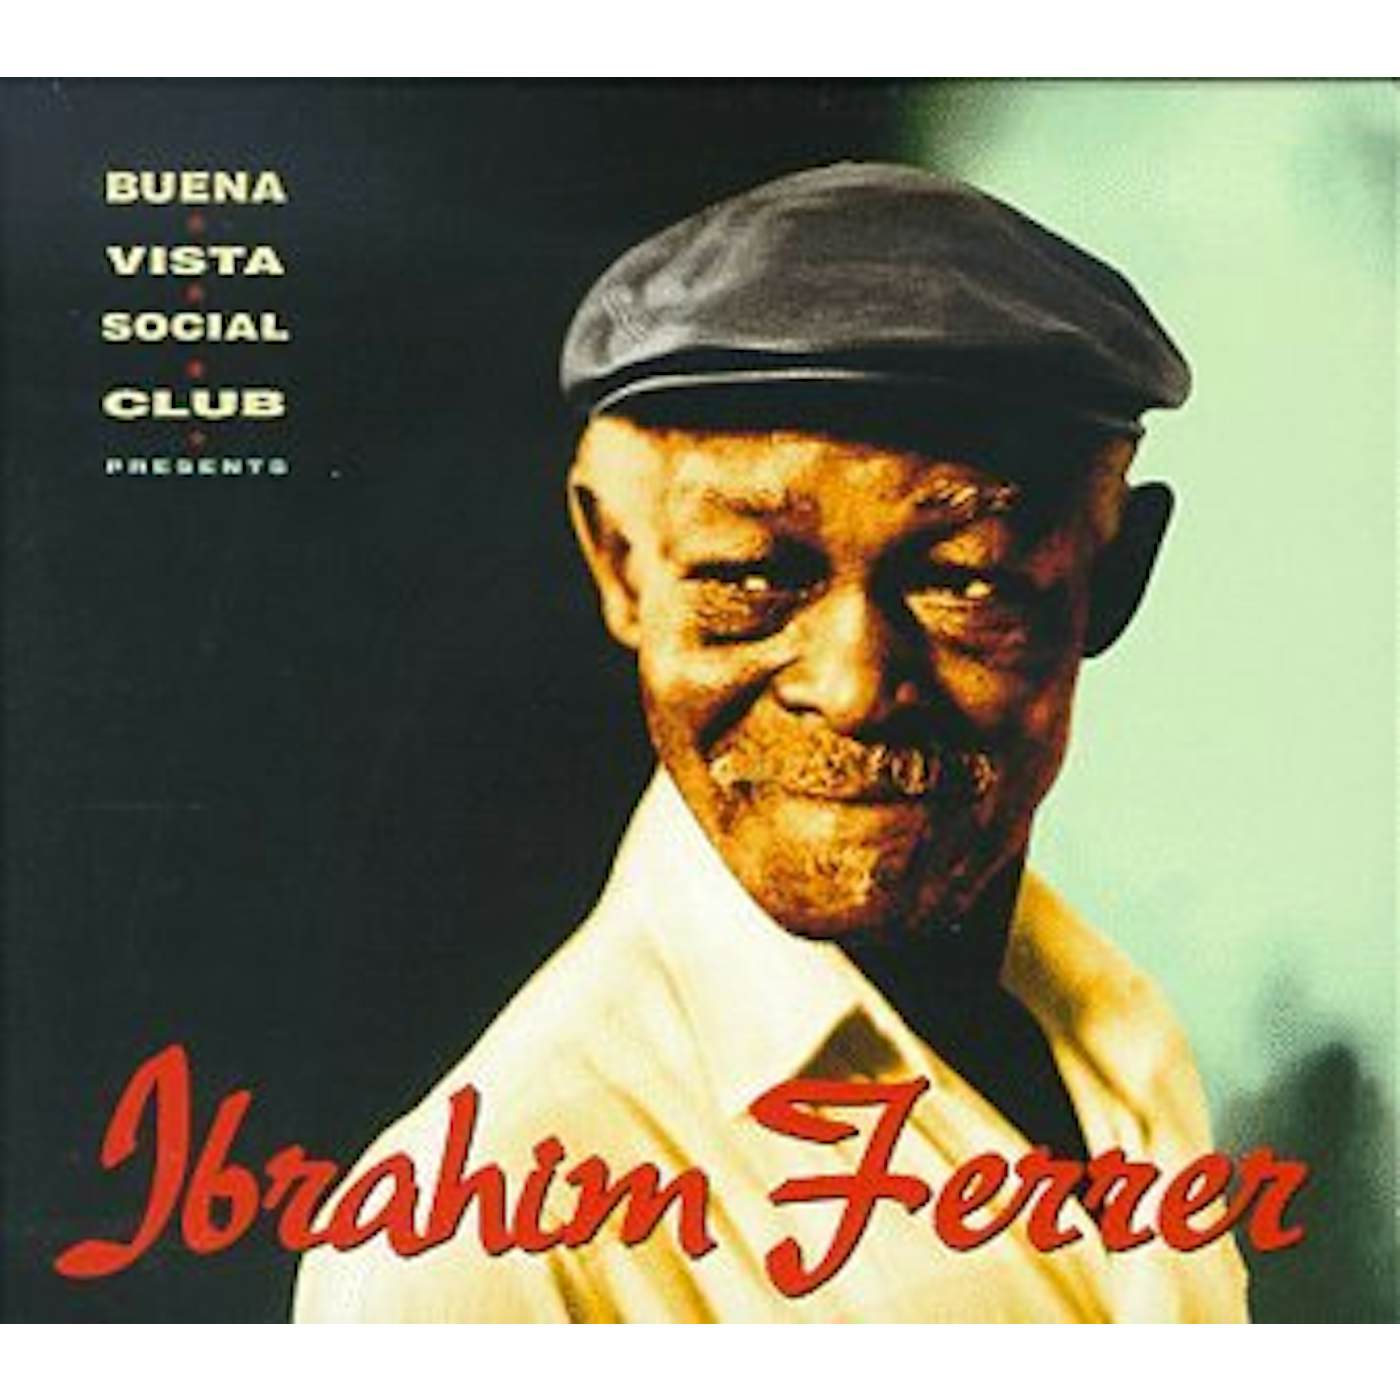 Buena Vista Social Club Presents Ibrahim Ferrer Vinyl Record